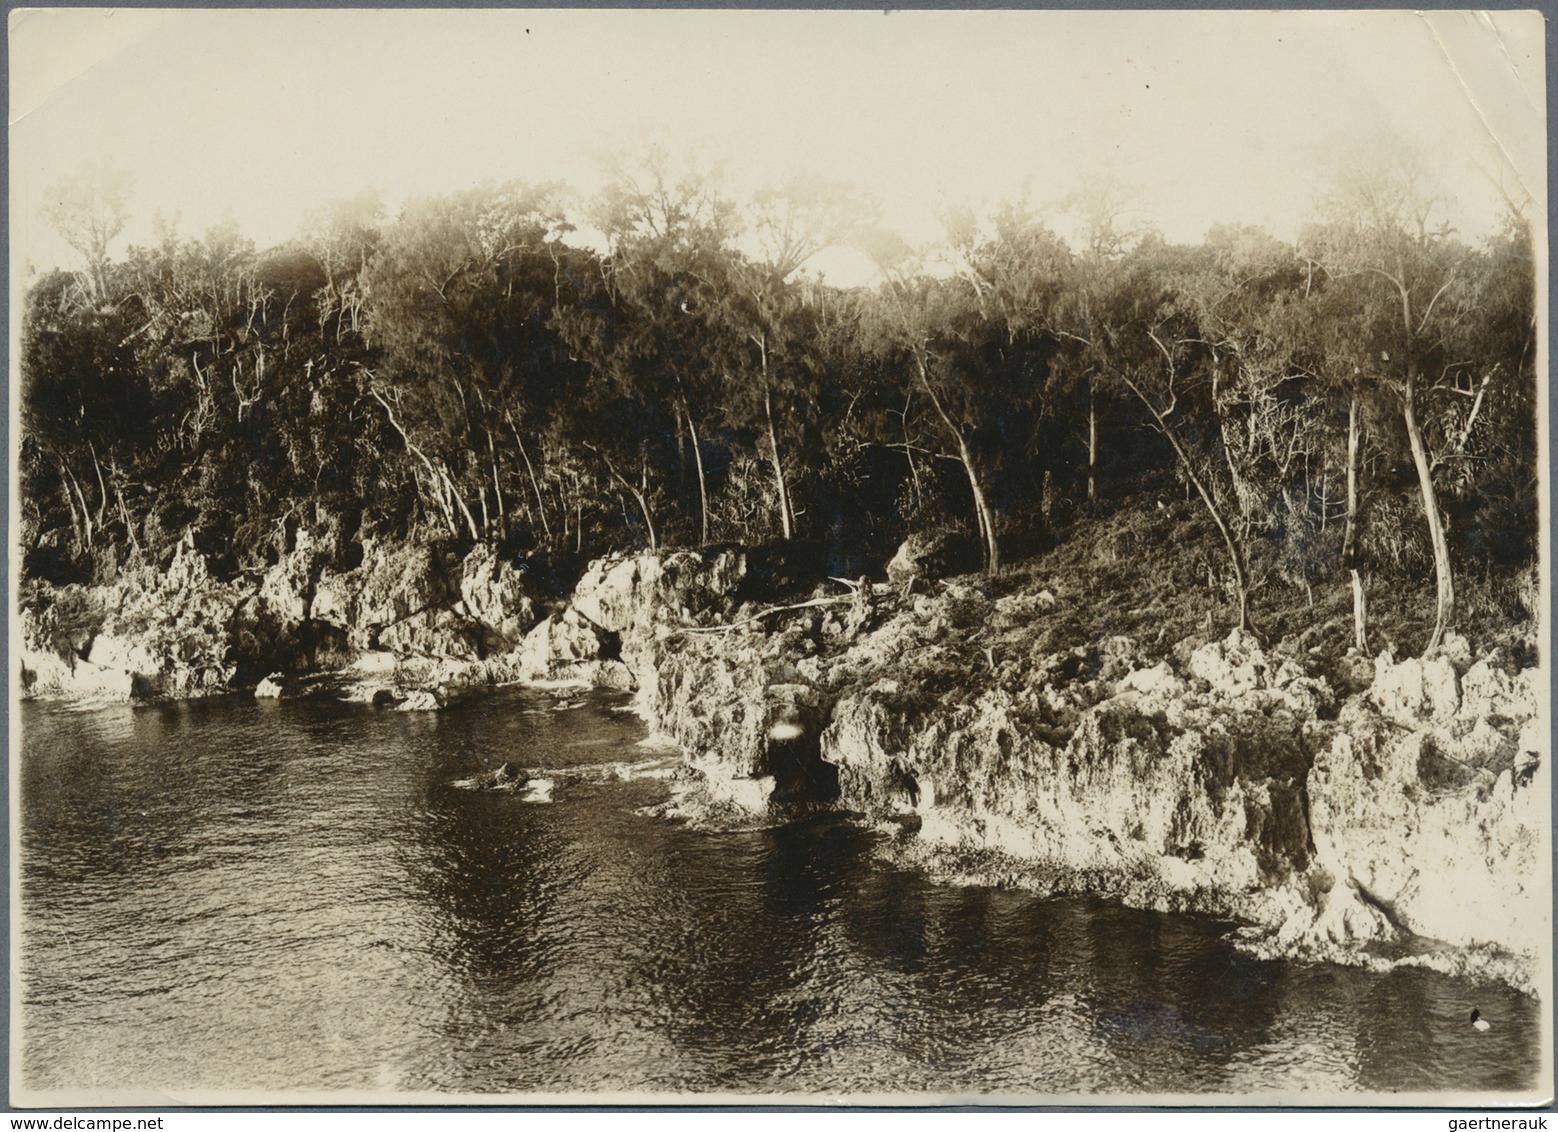 Japan - Besonderheiten: Nanyo - South Sea Mandated Islands, 1928/39, landscape postmarks (fukei-in)